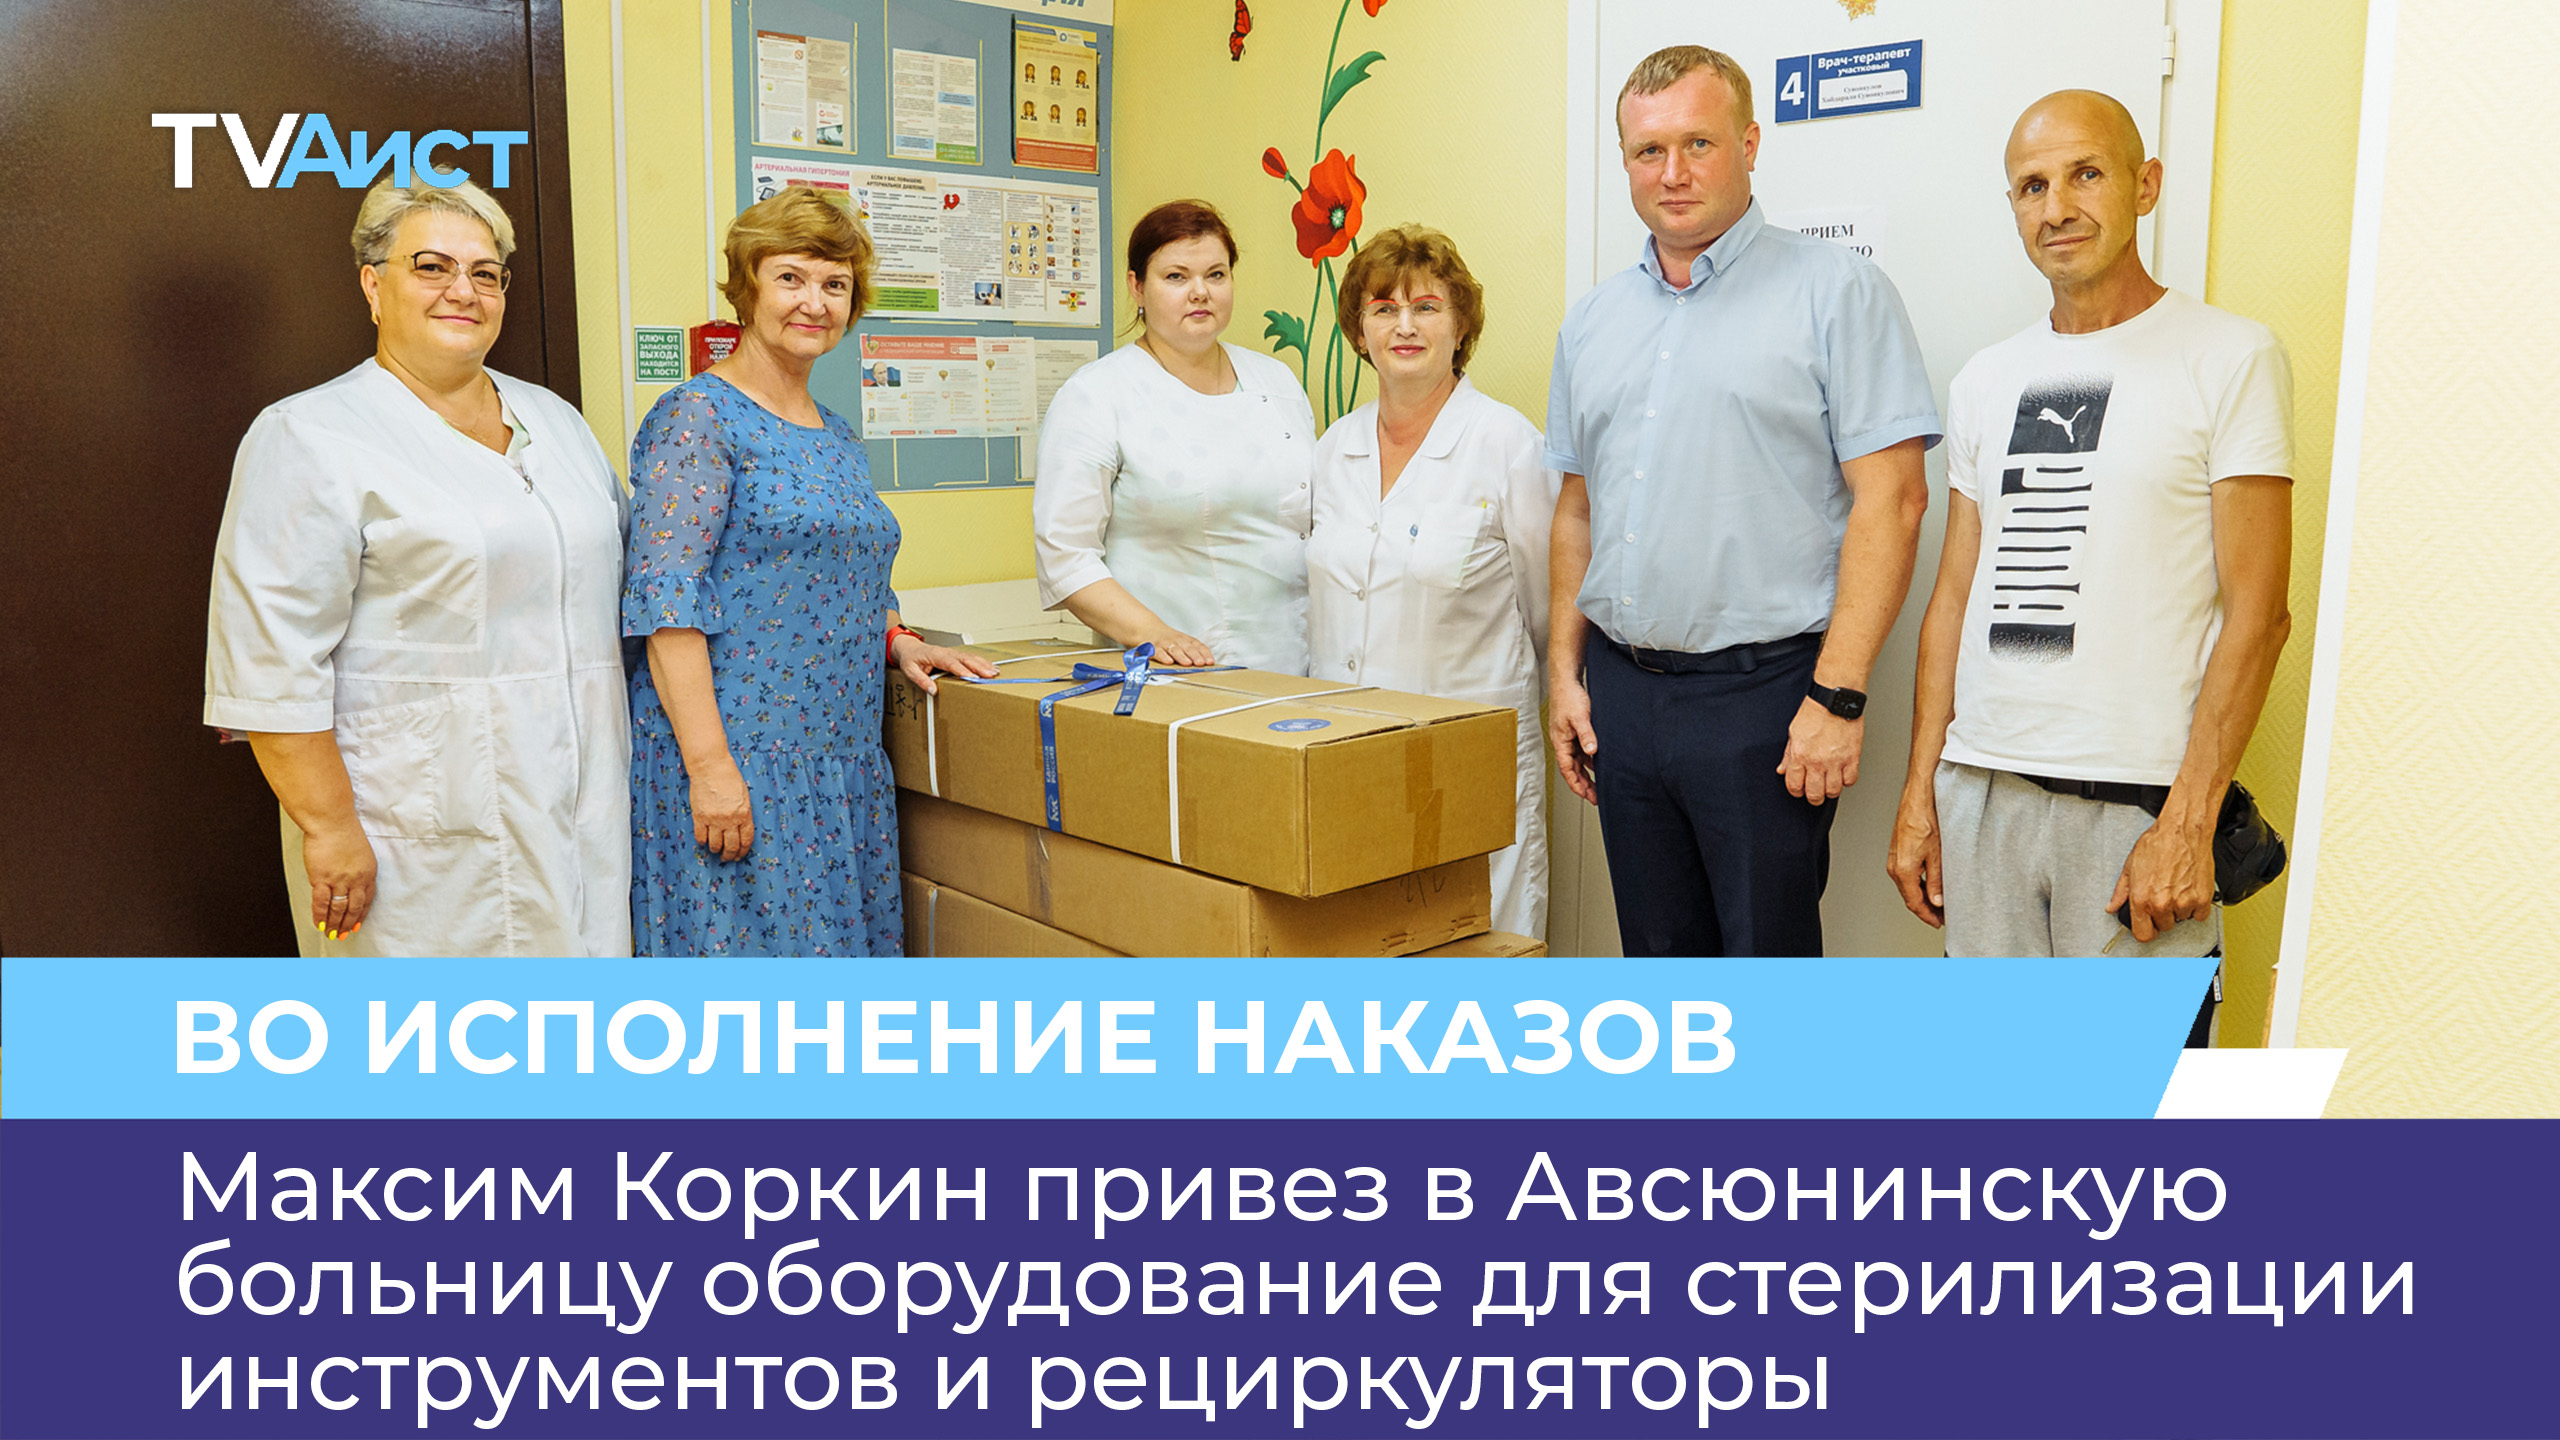 Максим Коркин привез в Авсюнинскую больницу оборудование для стерилизации инструментов